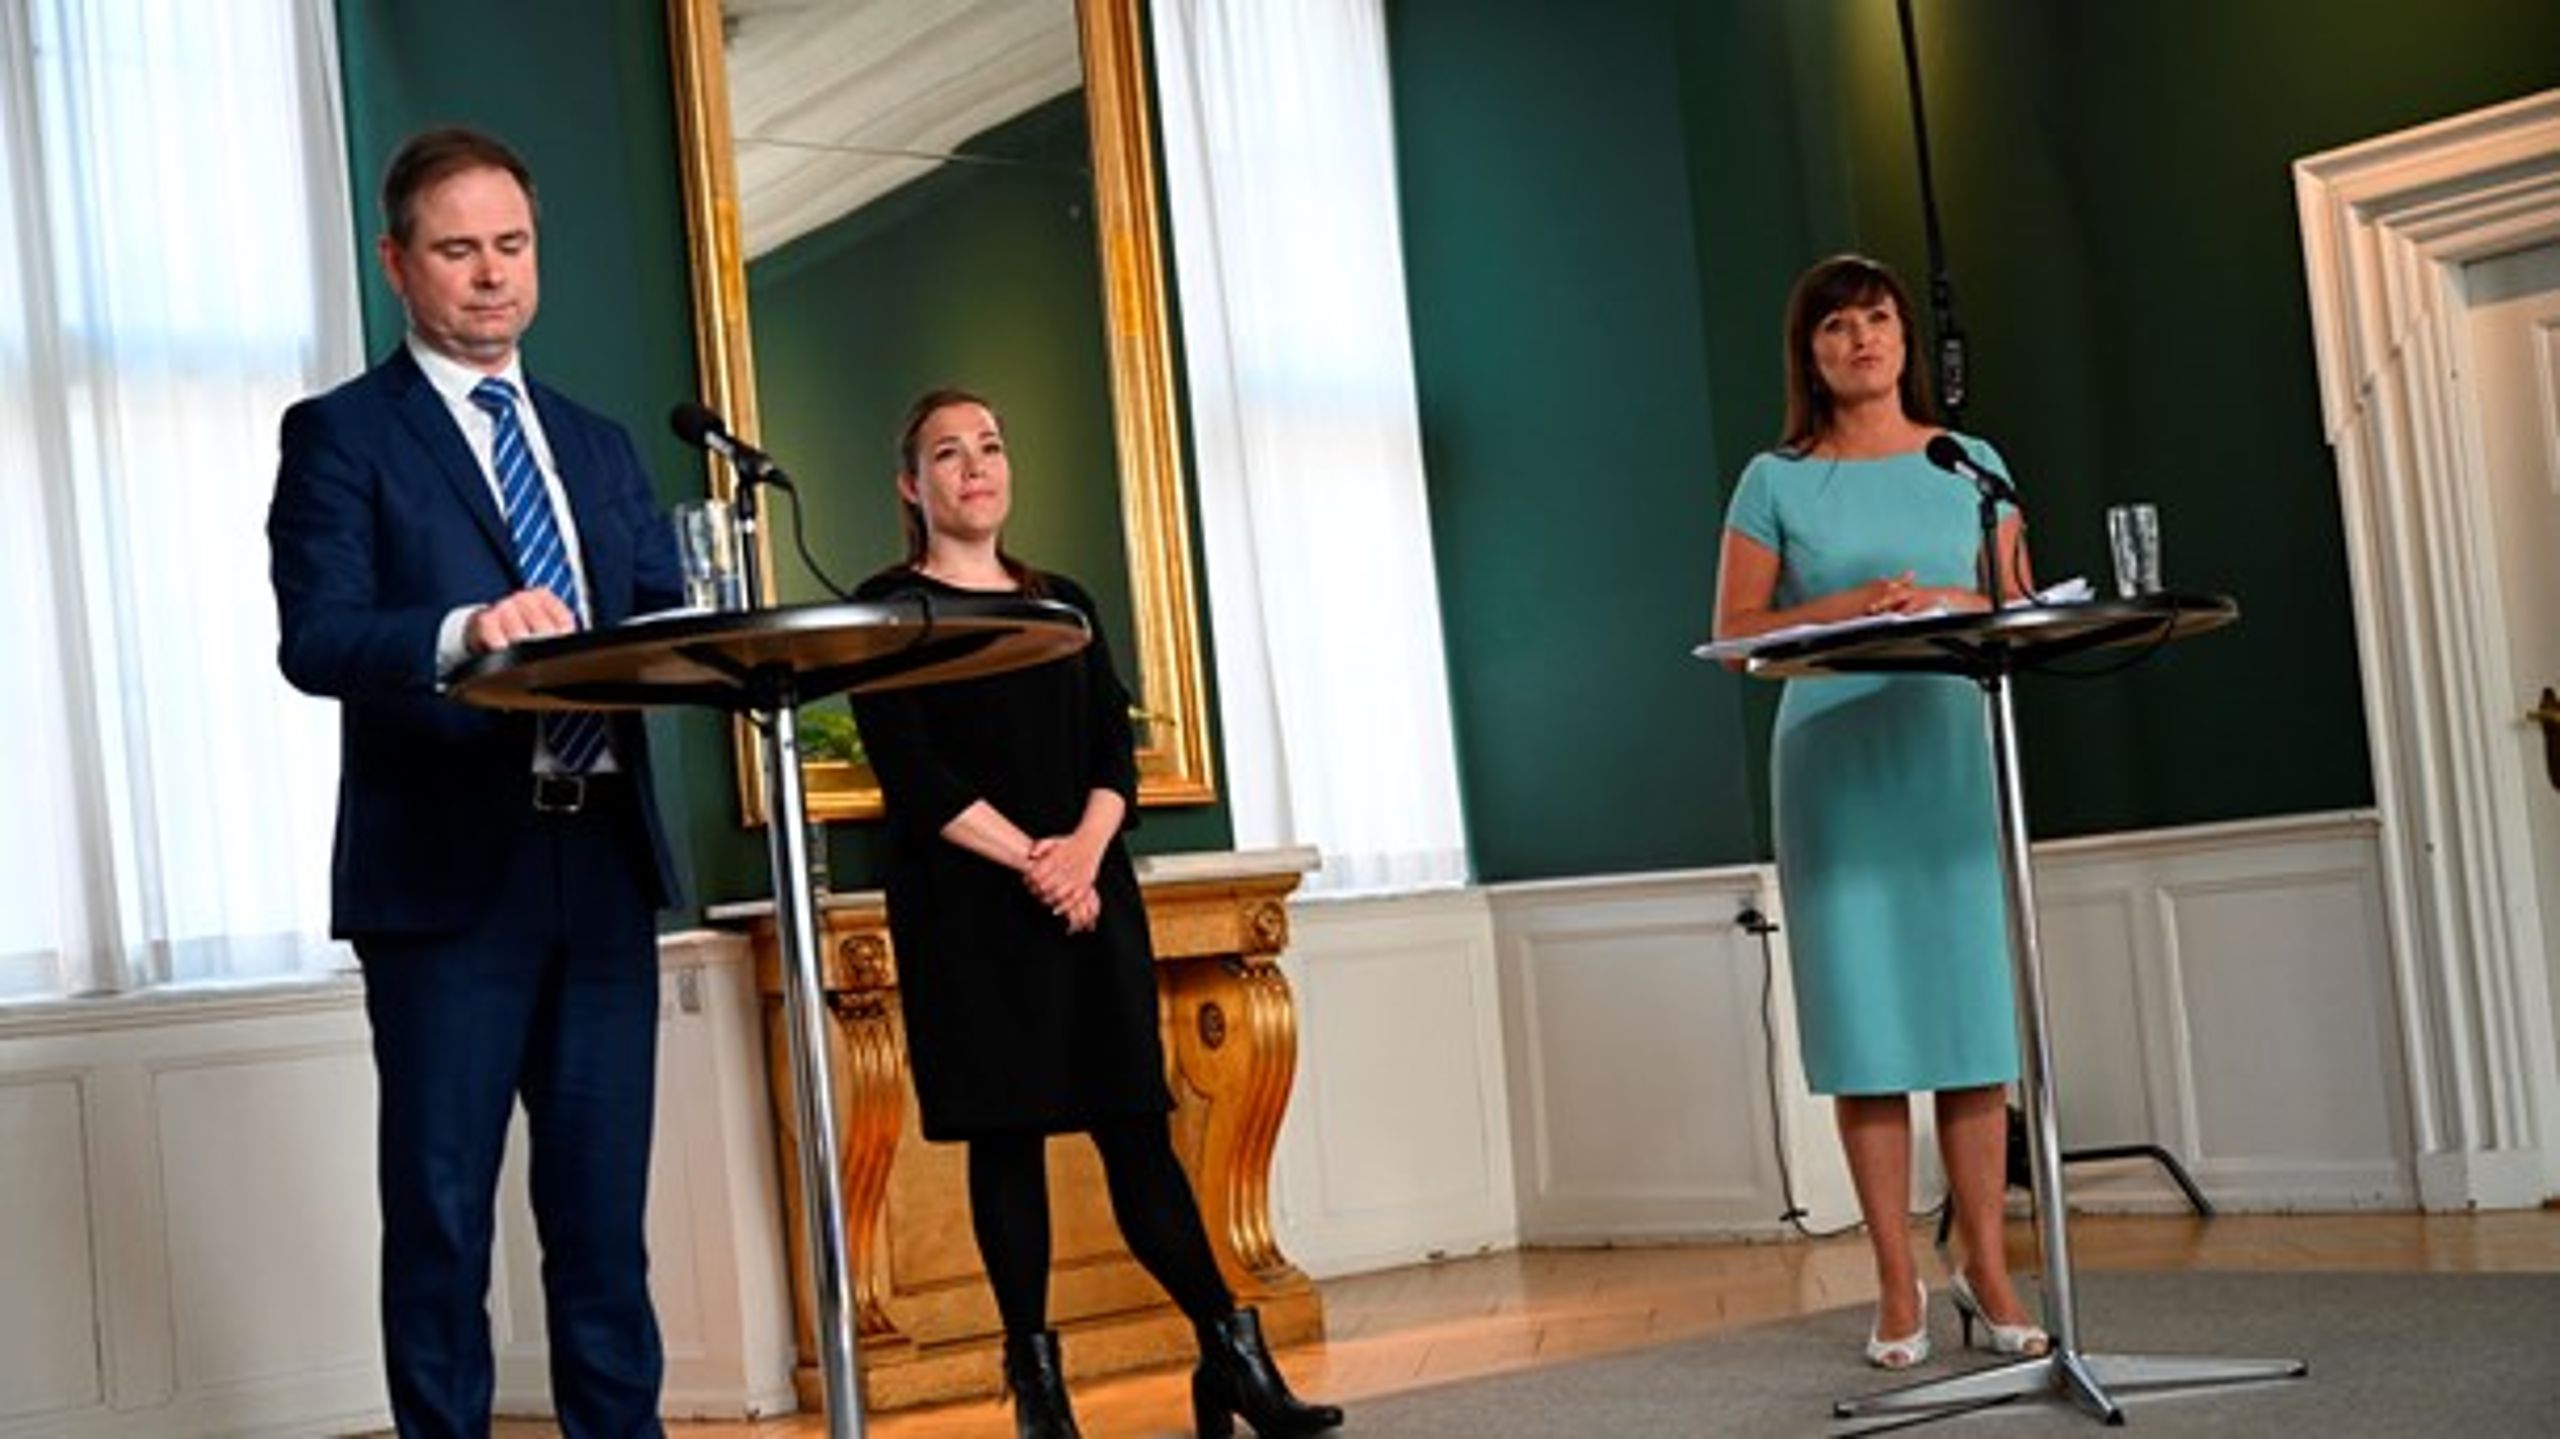 Regeringen har sammen med Venstre tirsdag præsenteret en ny aftale for kommunal udligning, som er indgået sammen med Radikale Venstre, SF og Alternativet.